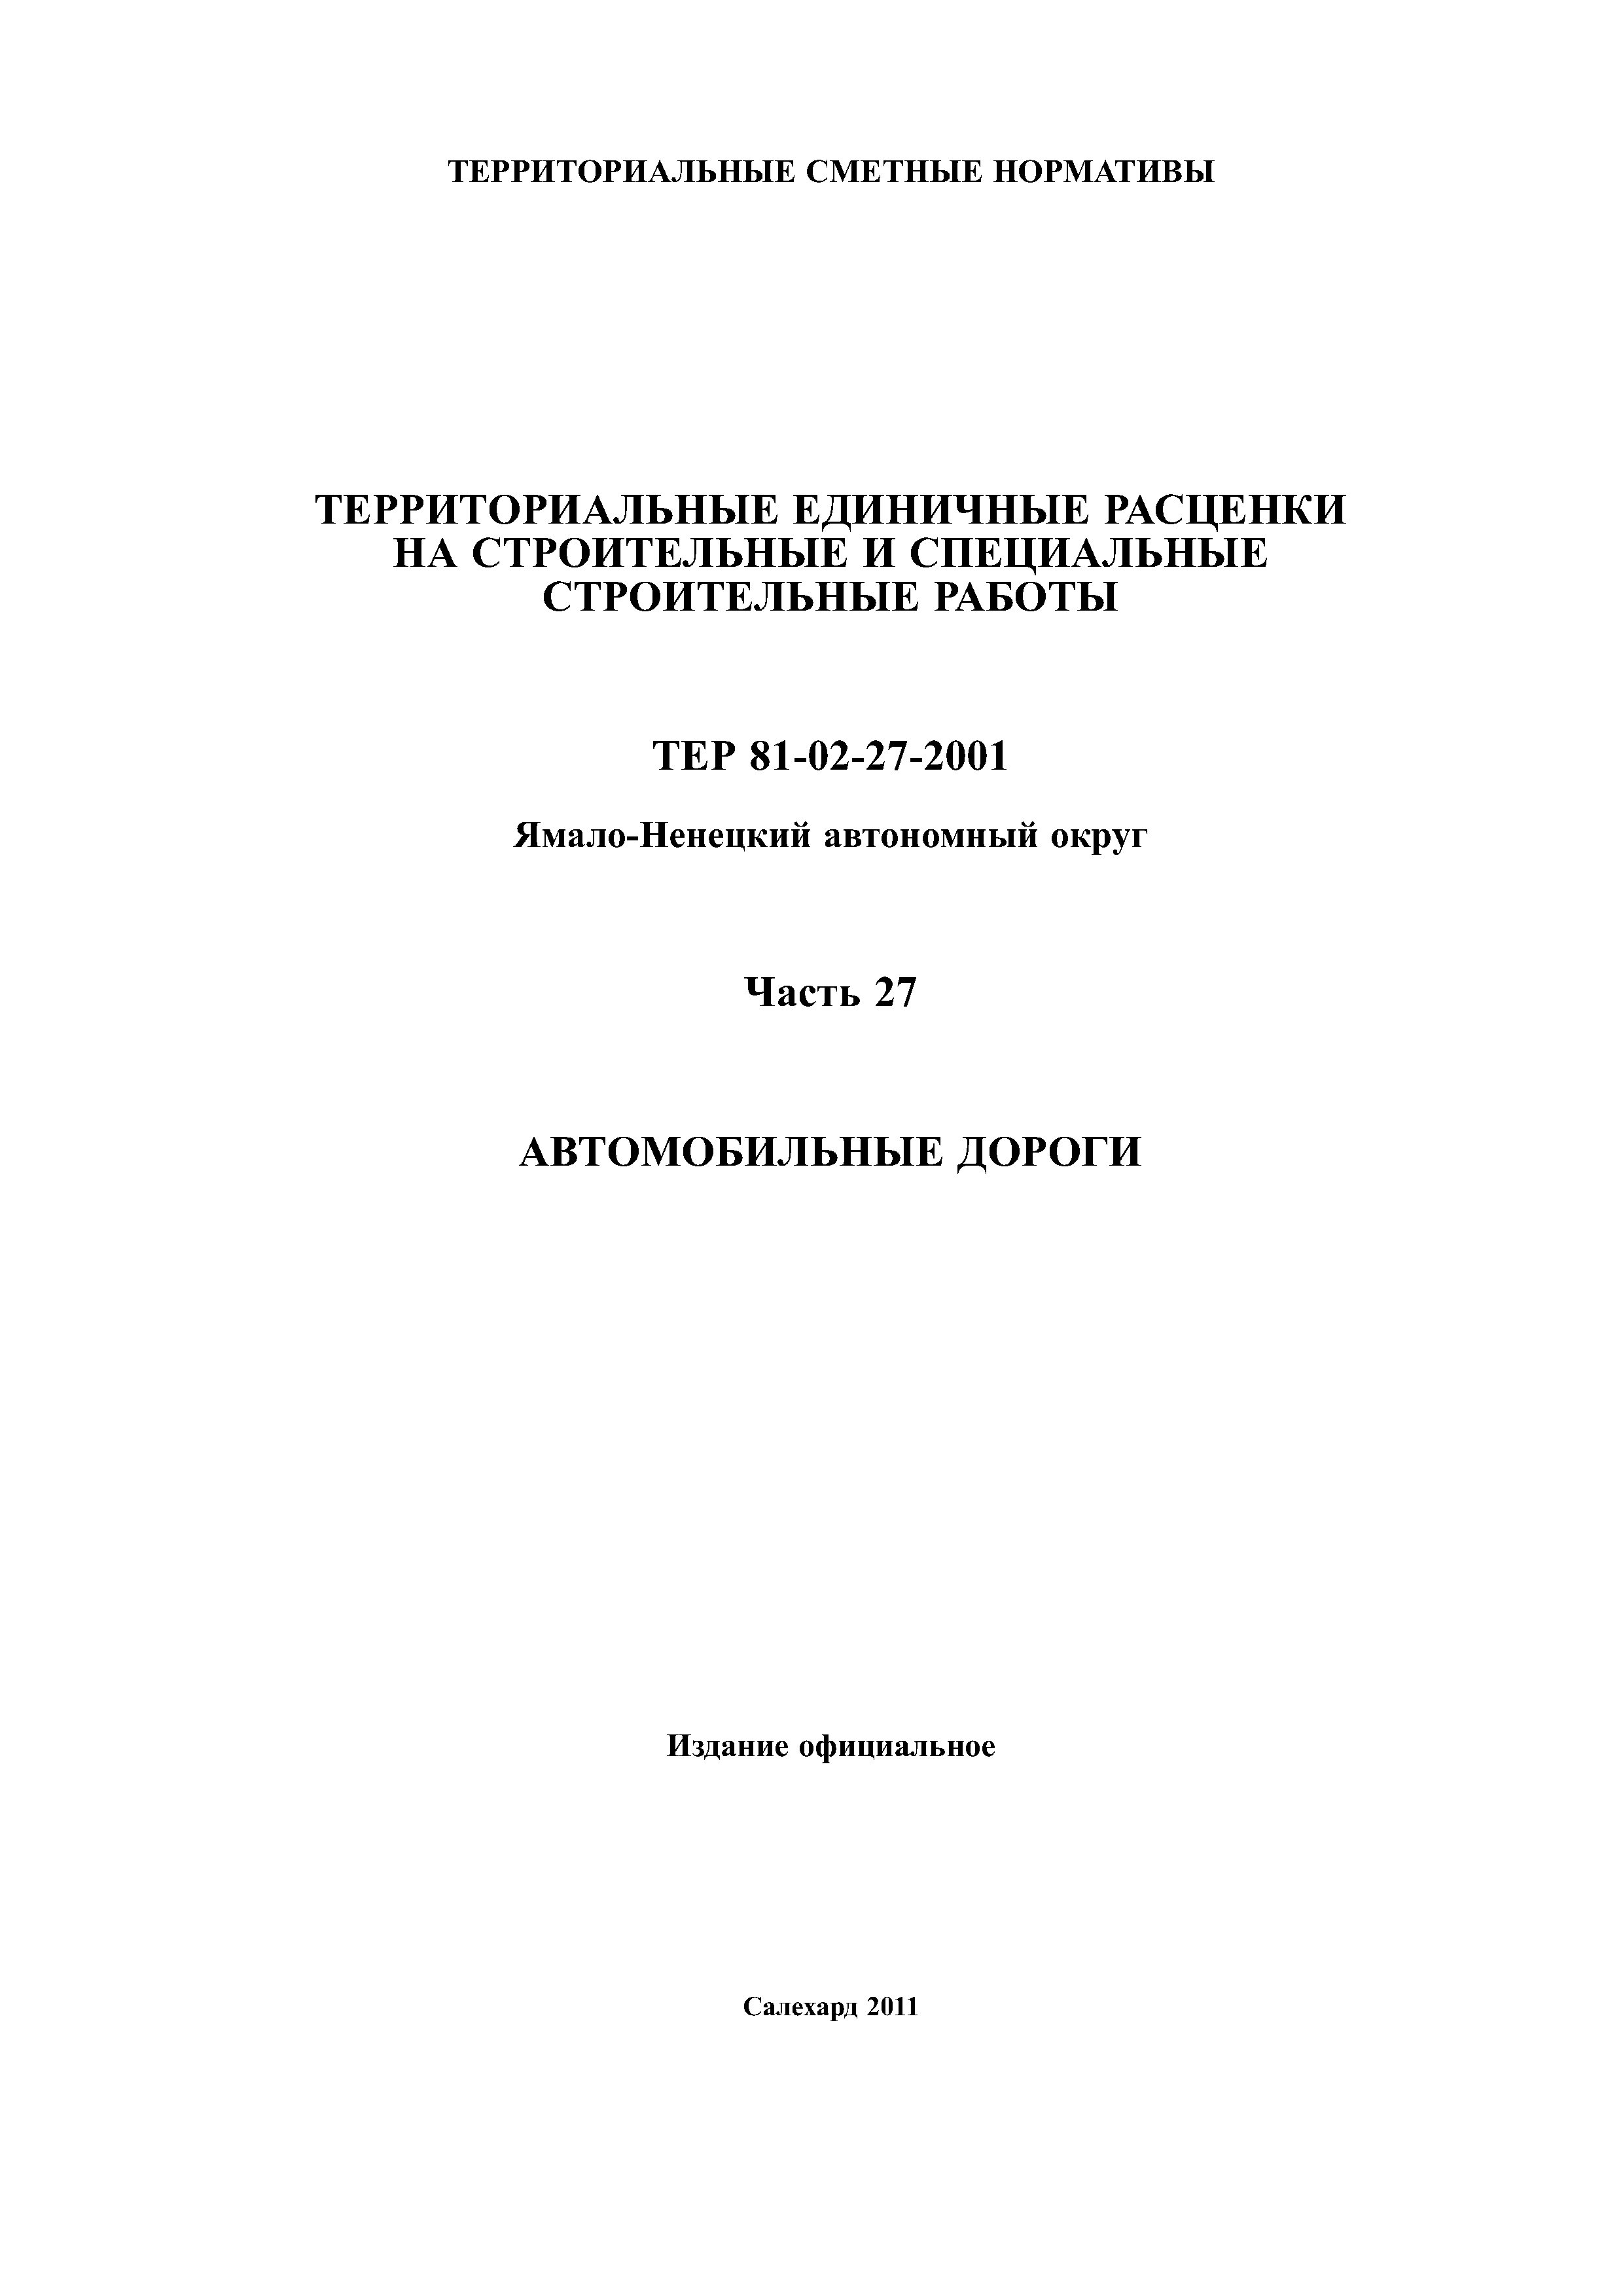 ТЕР Ямало-Ненецкий автономный округ 27-2001